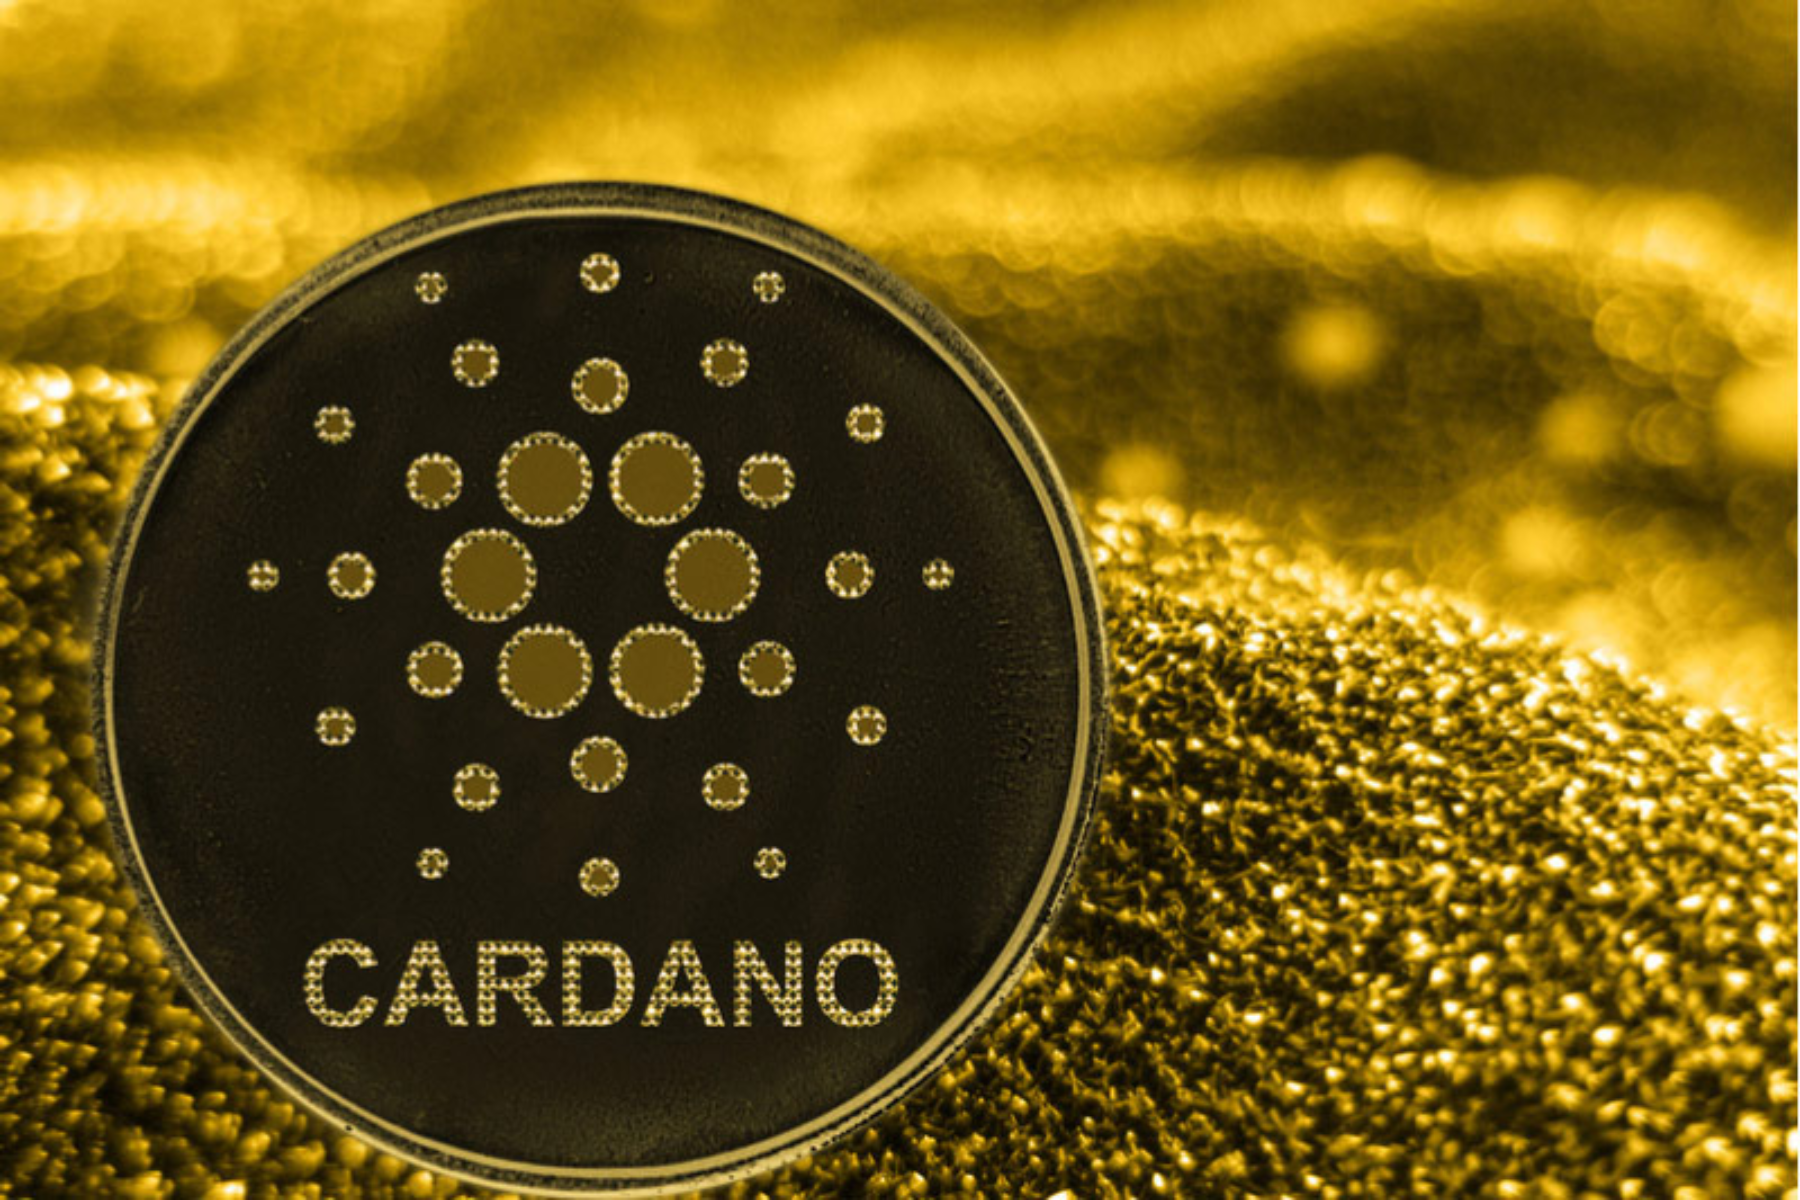 The logo of Cardano (ADA)